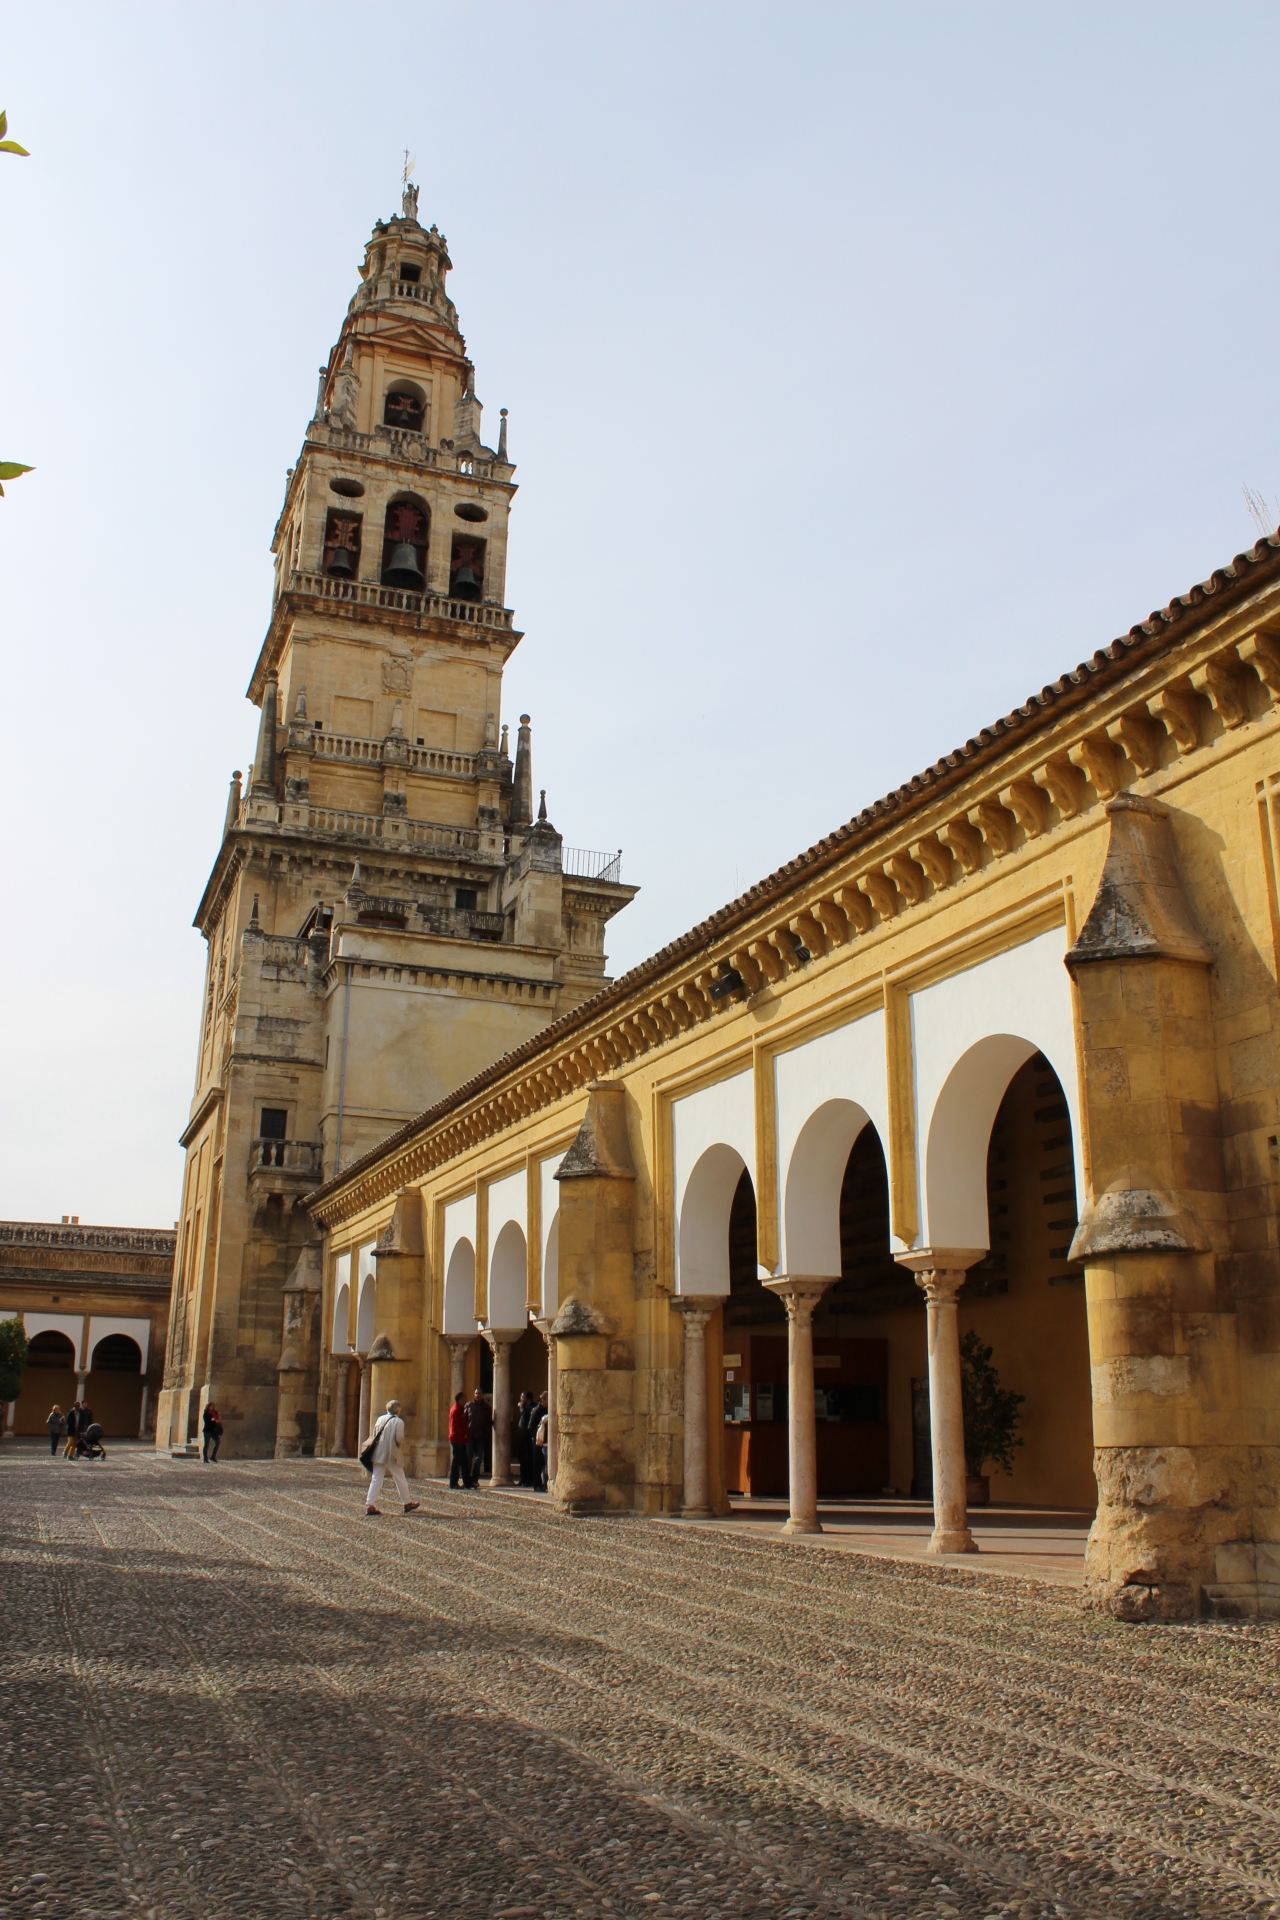 コルドバのイエズス会管区教会堂と農園跡